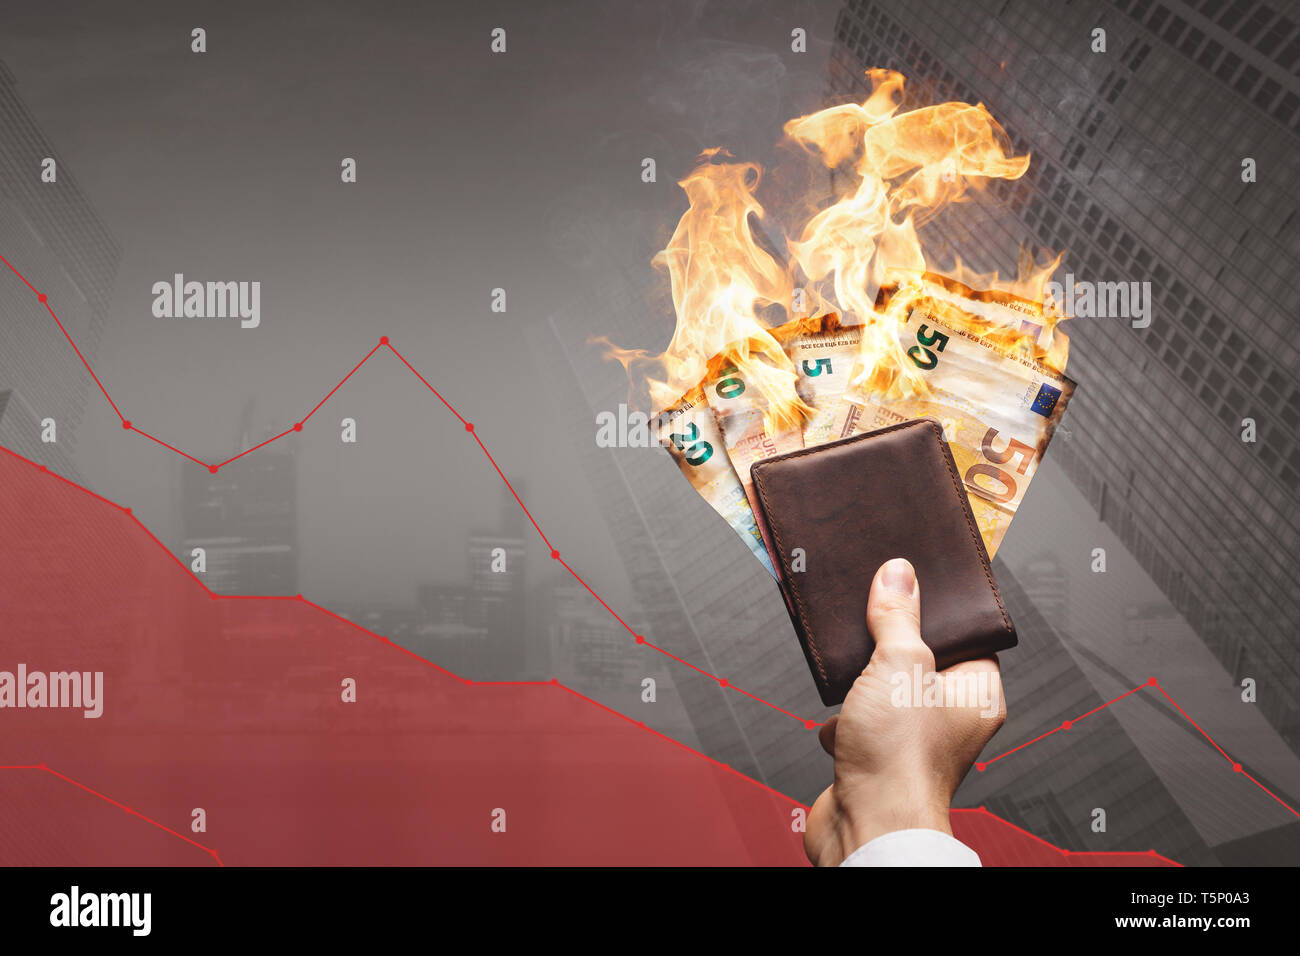 Verlieren geld Konzept - brennende Euro-scheine vor einem sinkenden Graph Stockfoto